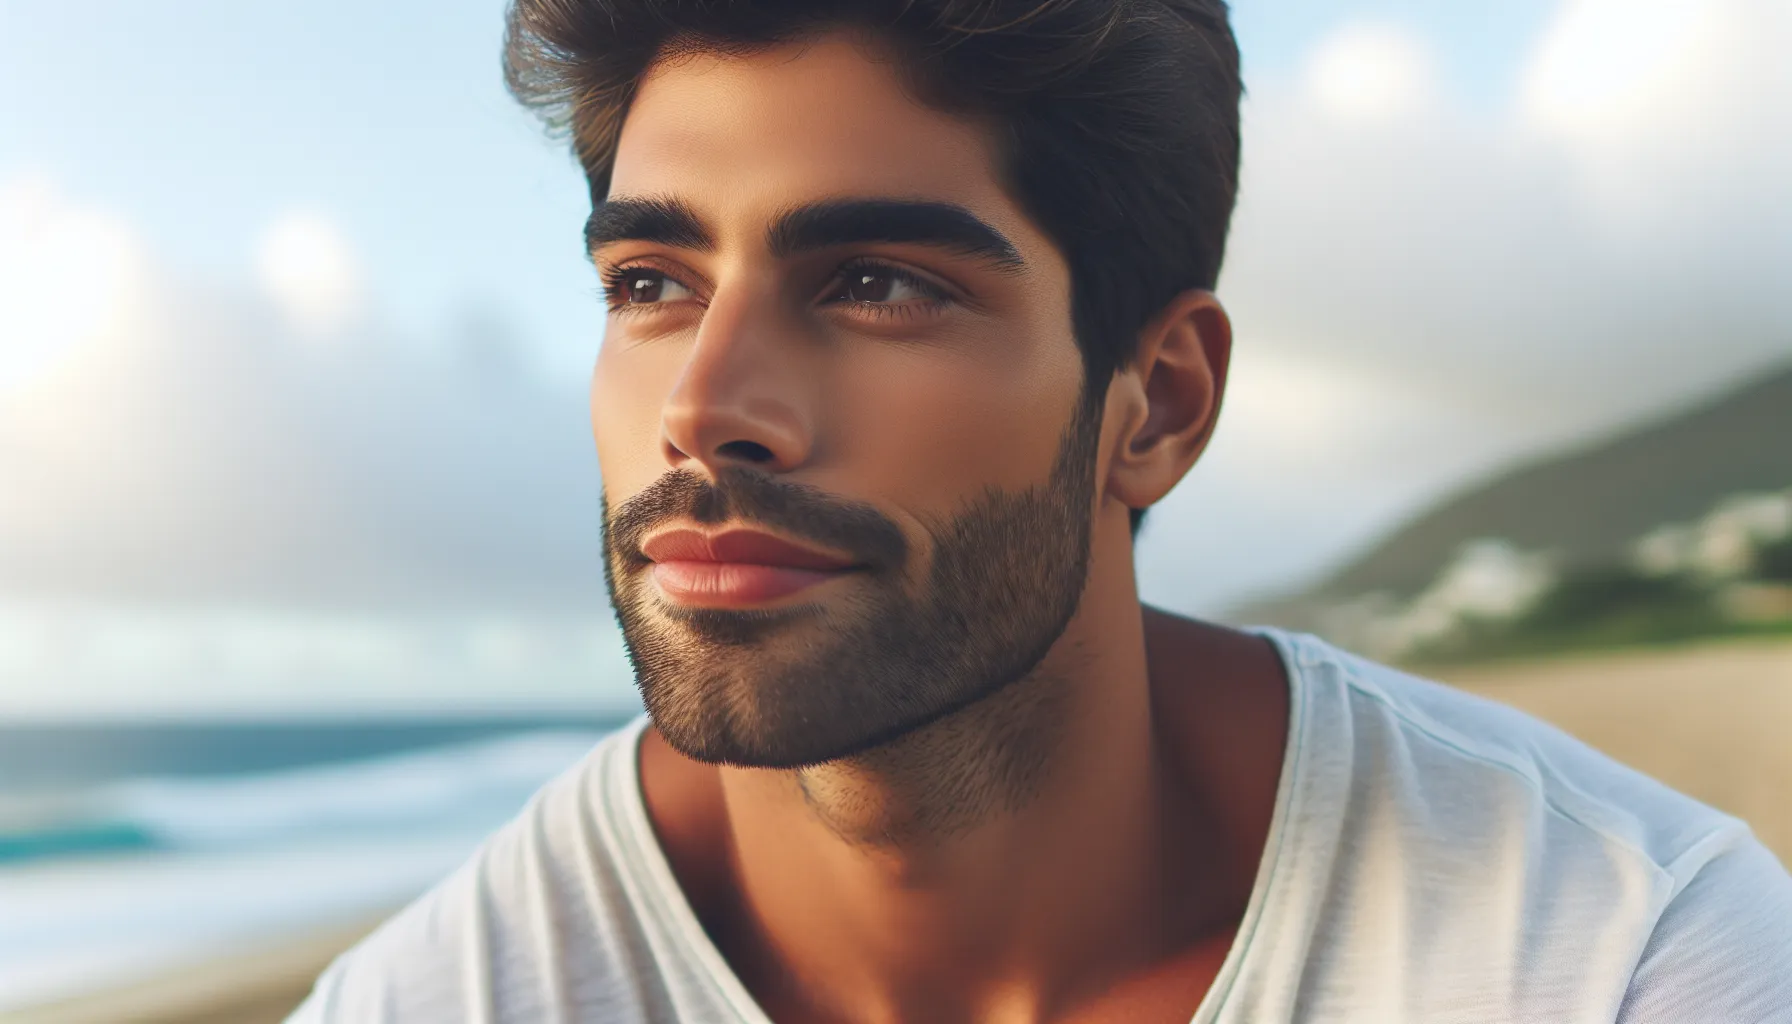 Una imagen de una persona reflexiva mirando al horizonte con expresión de serenidad y aceptación